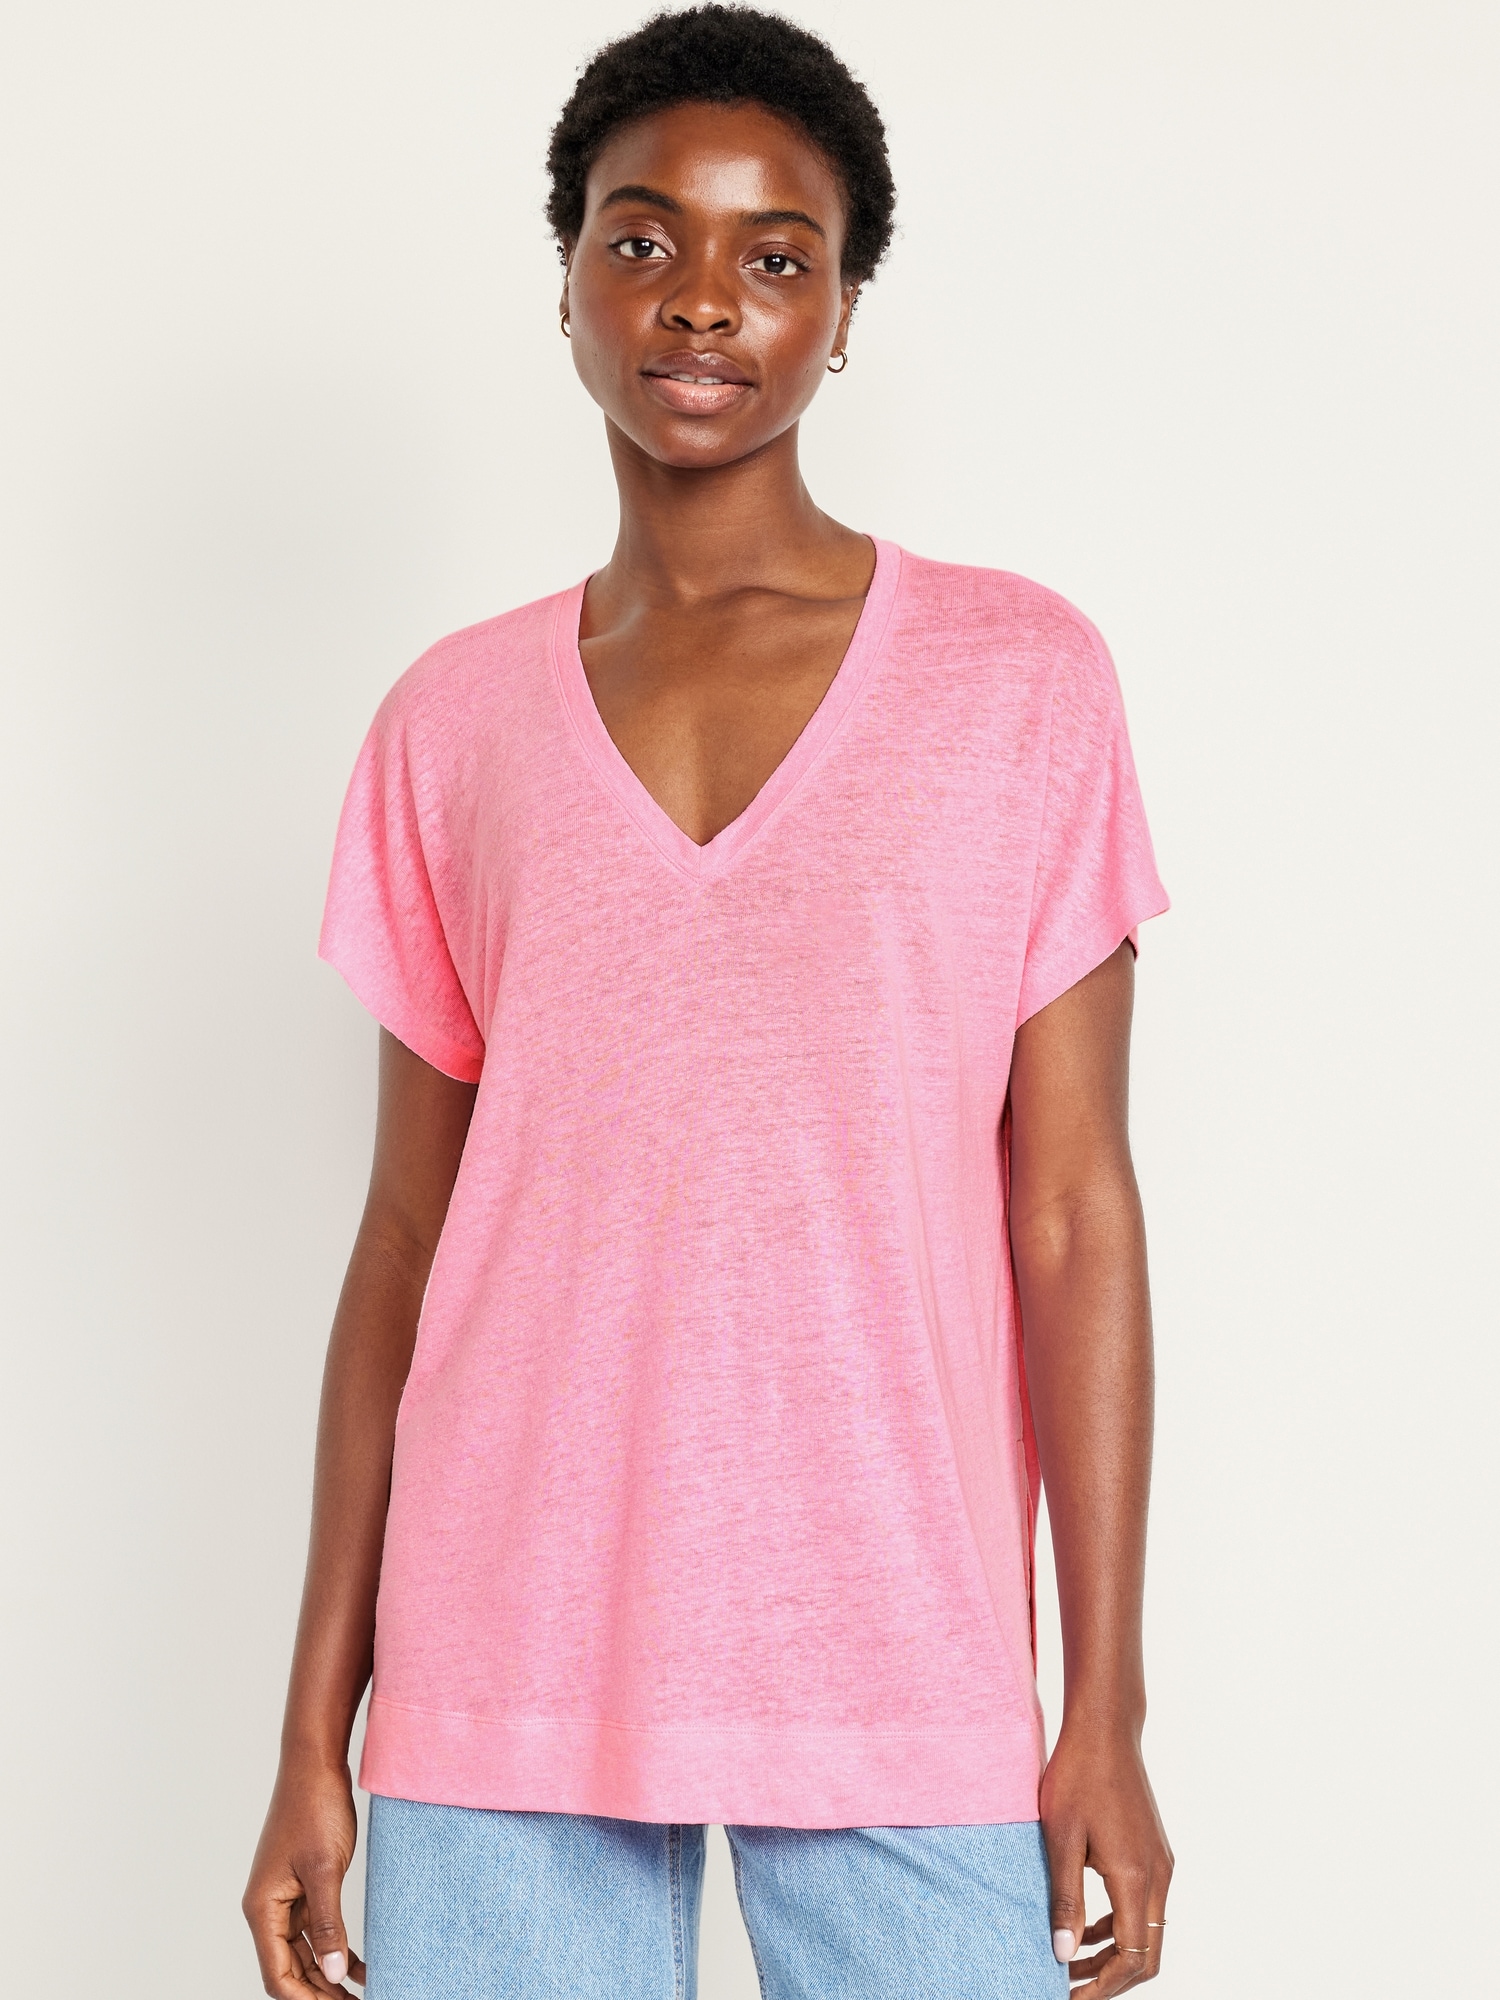 Oversized Linen-Blend Tunic T-Shirt Hot Deal